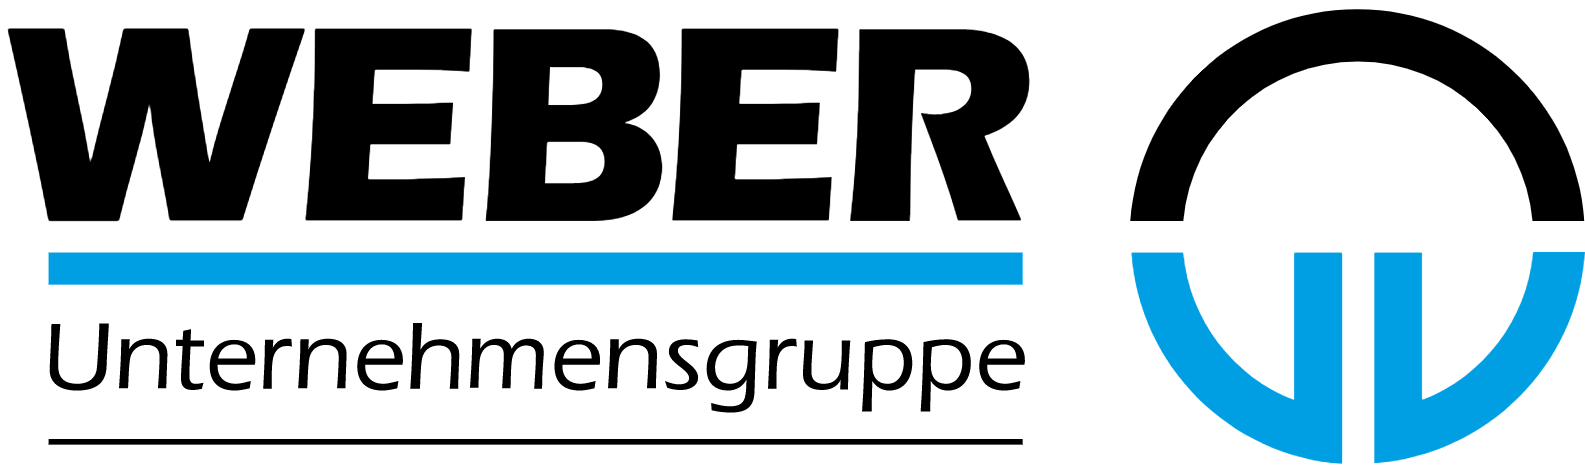 weber-rohrleitungsbau-logo